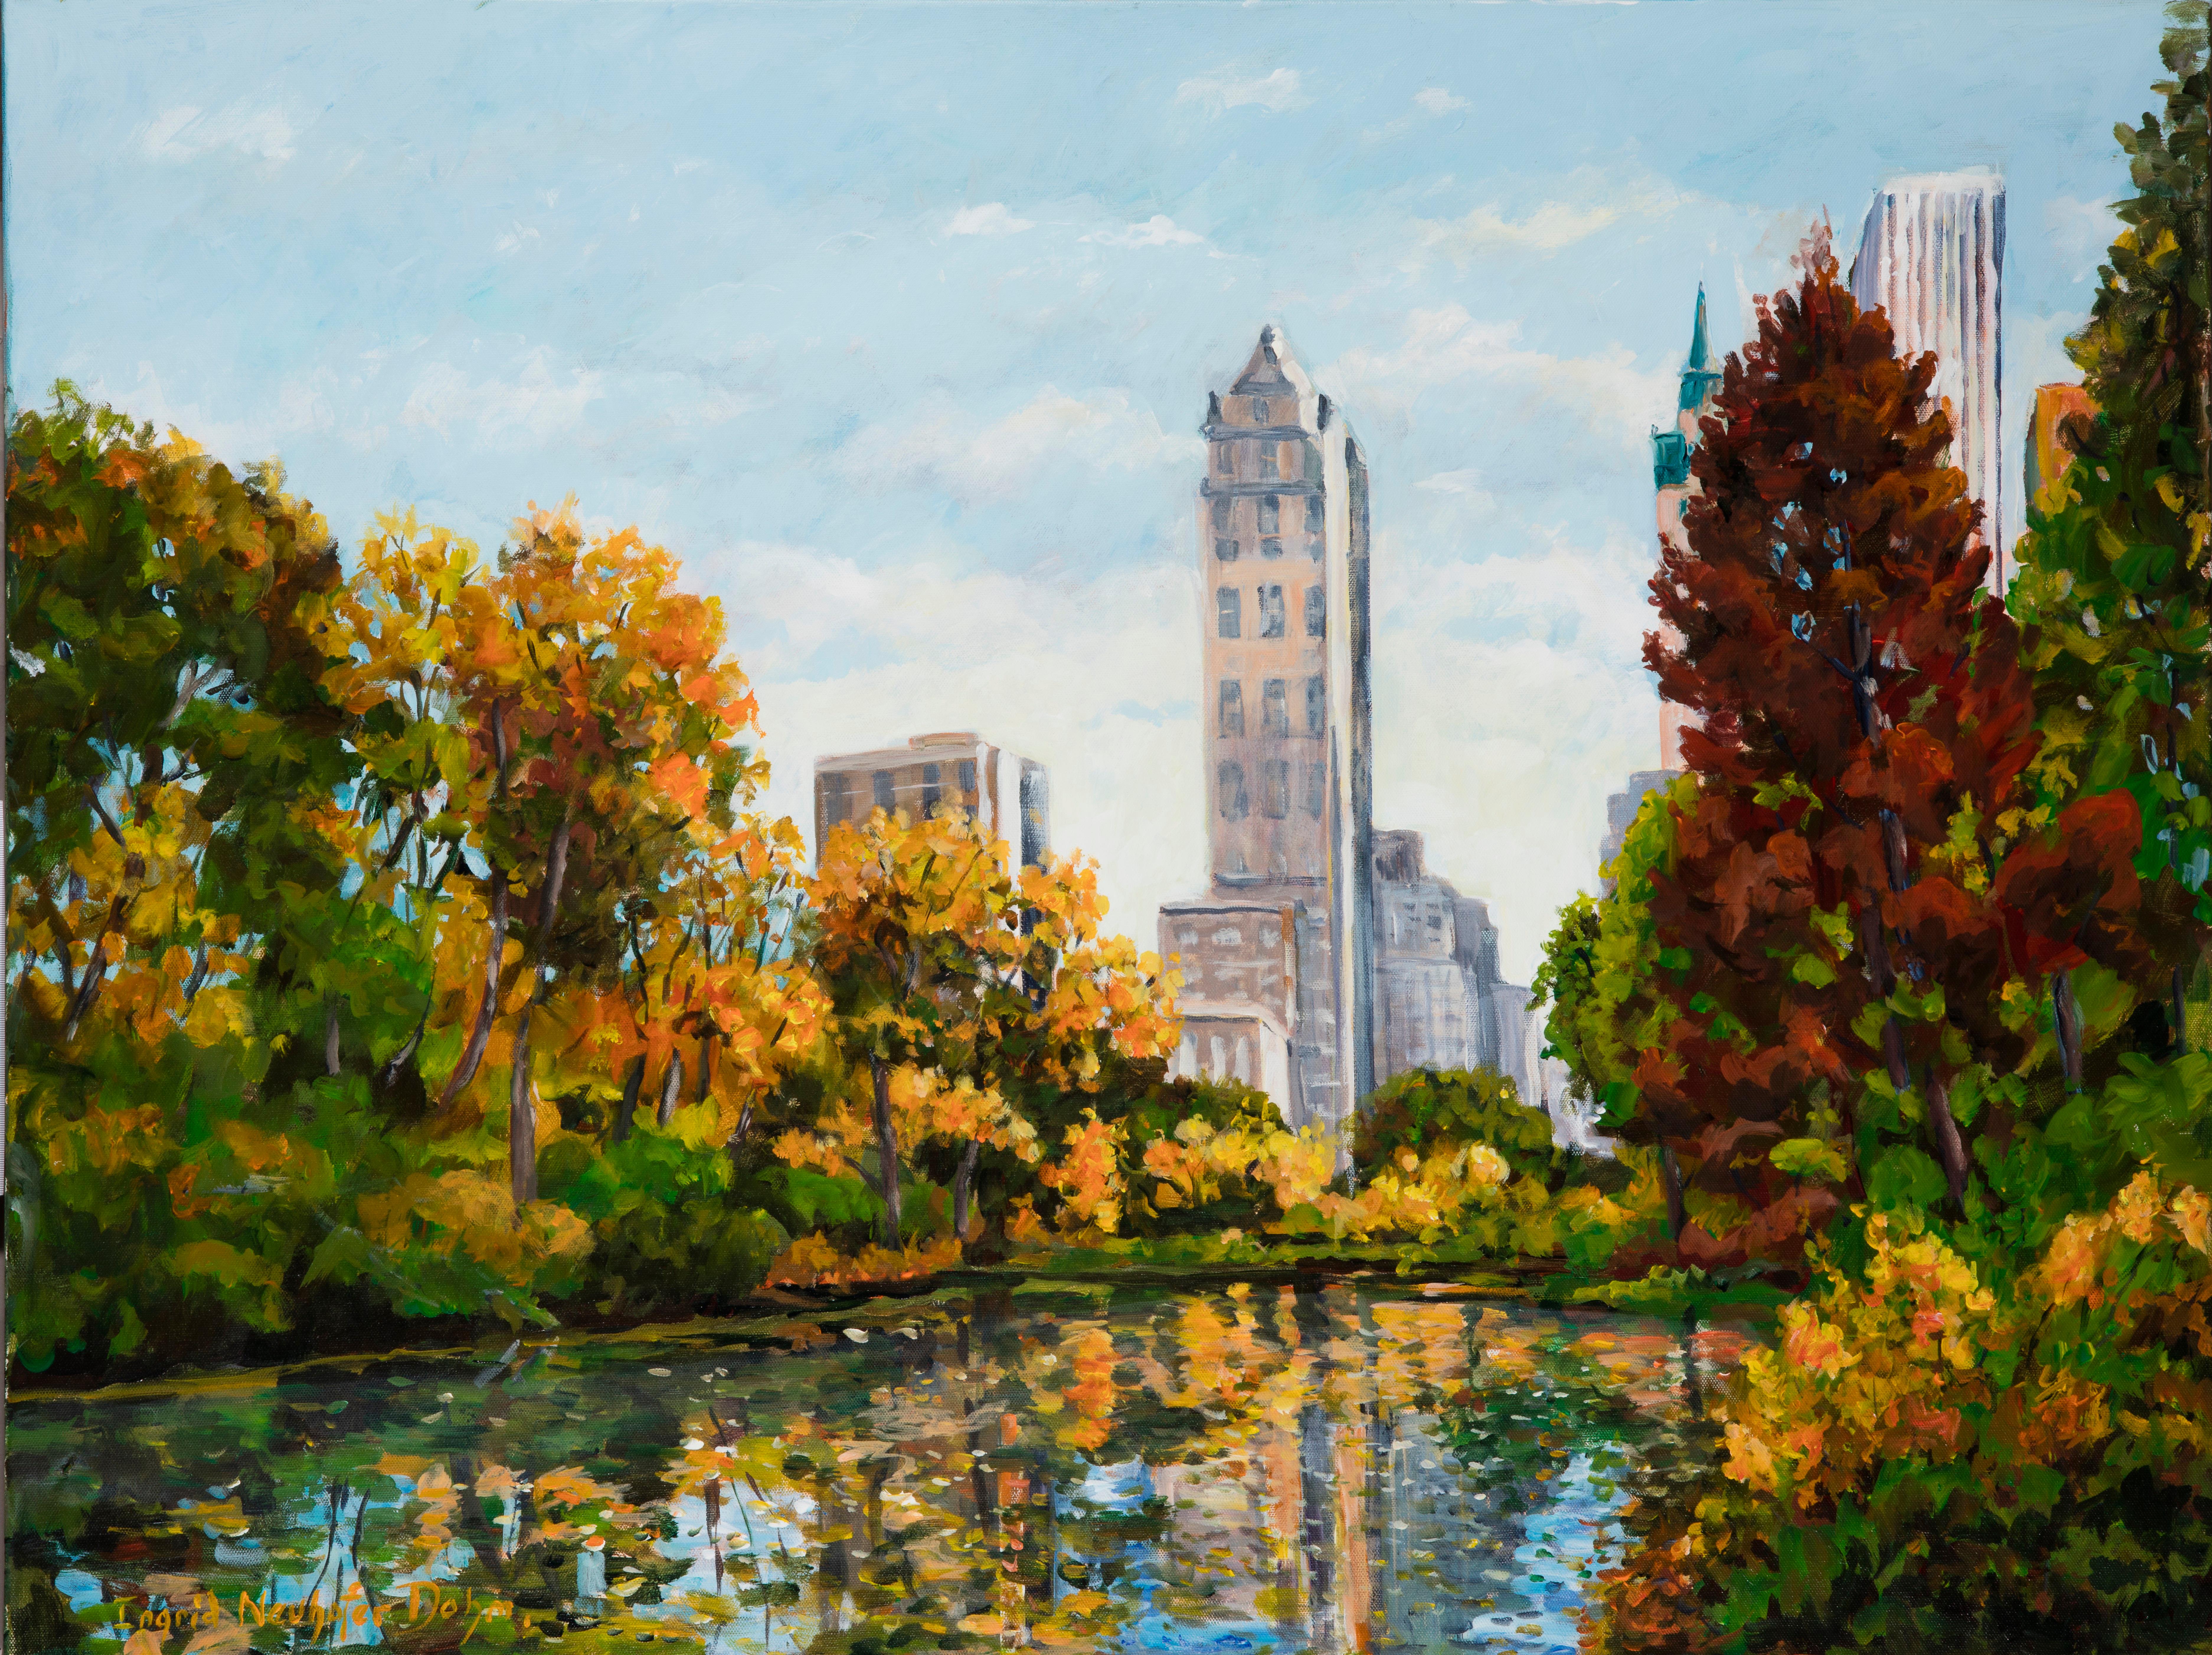 Landscape Painting Ingrid Dohm - Central Park, peinture de paysage à l'acrylique sur toile de Central Park, 2016